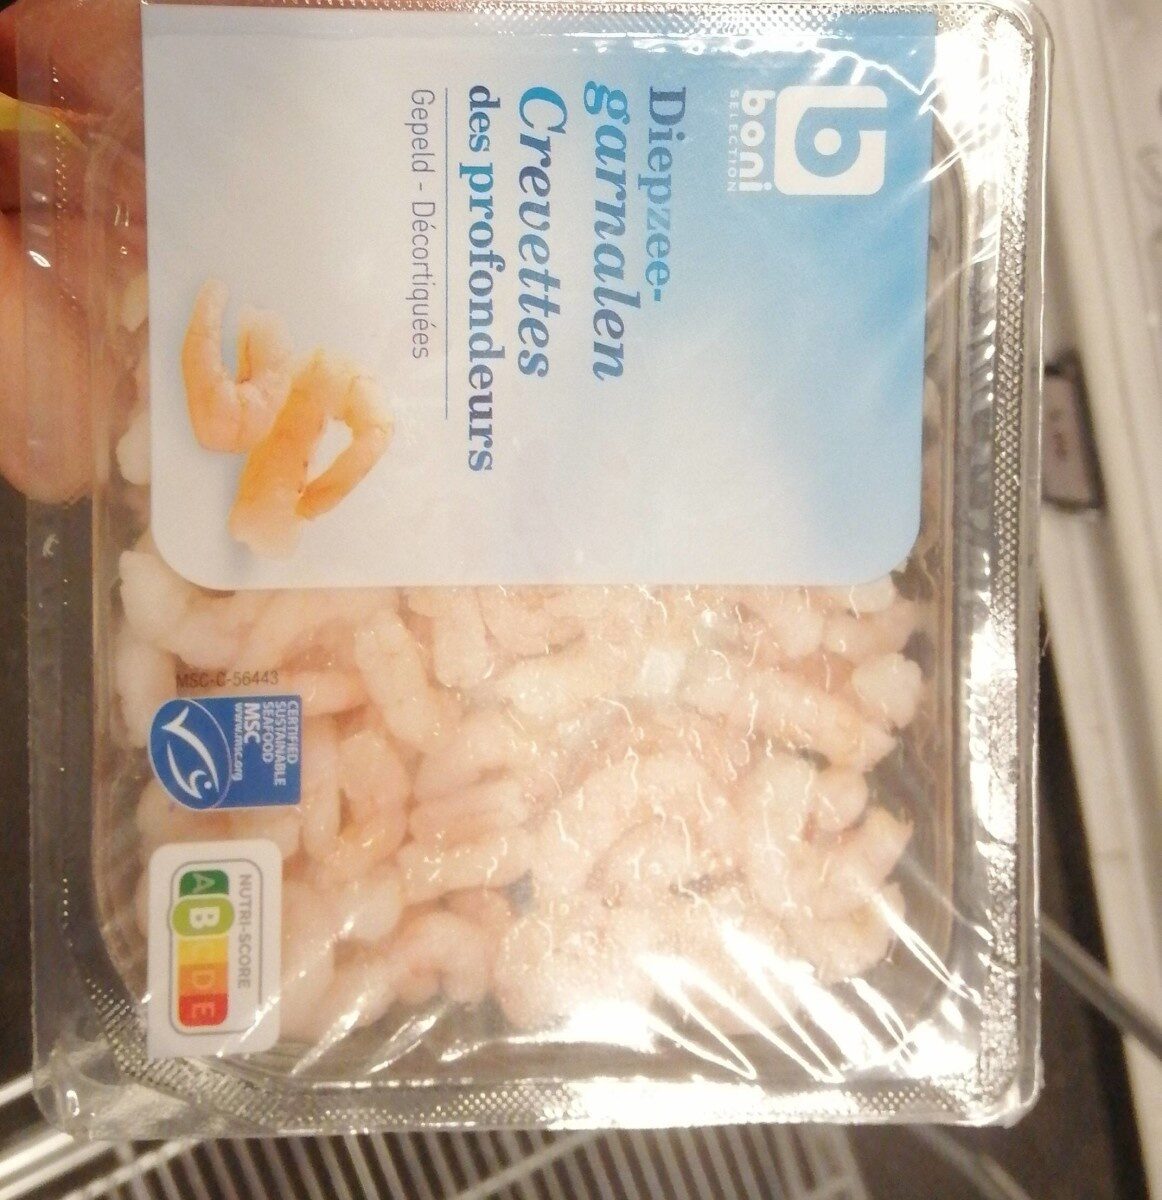 Crevettes des profondeurs - Produit - en